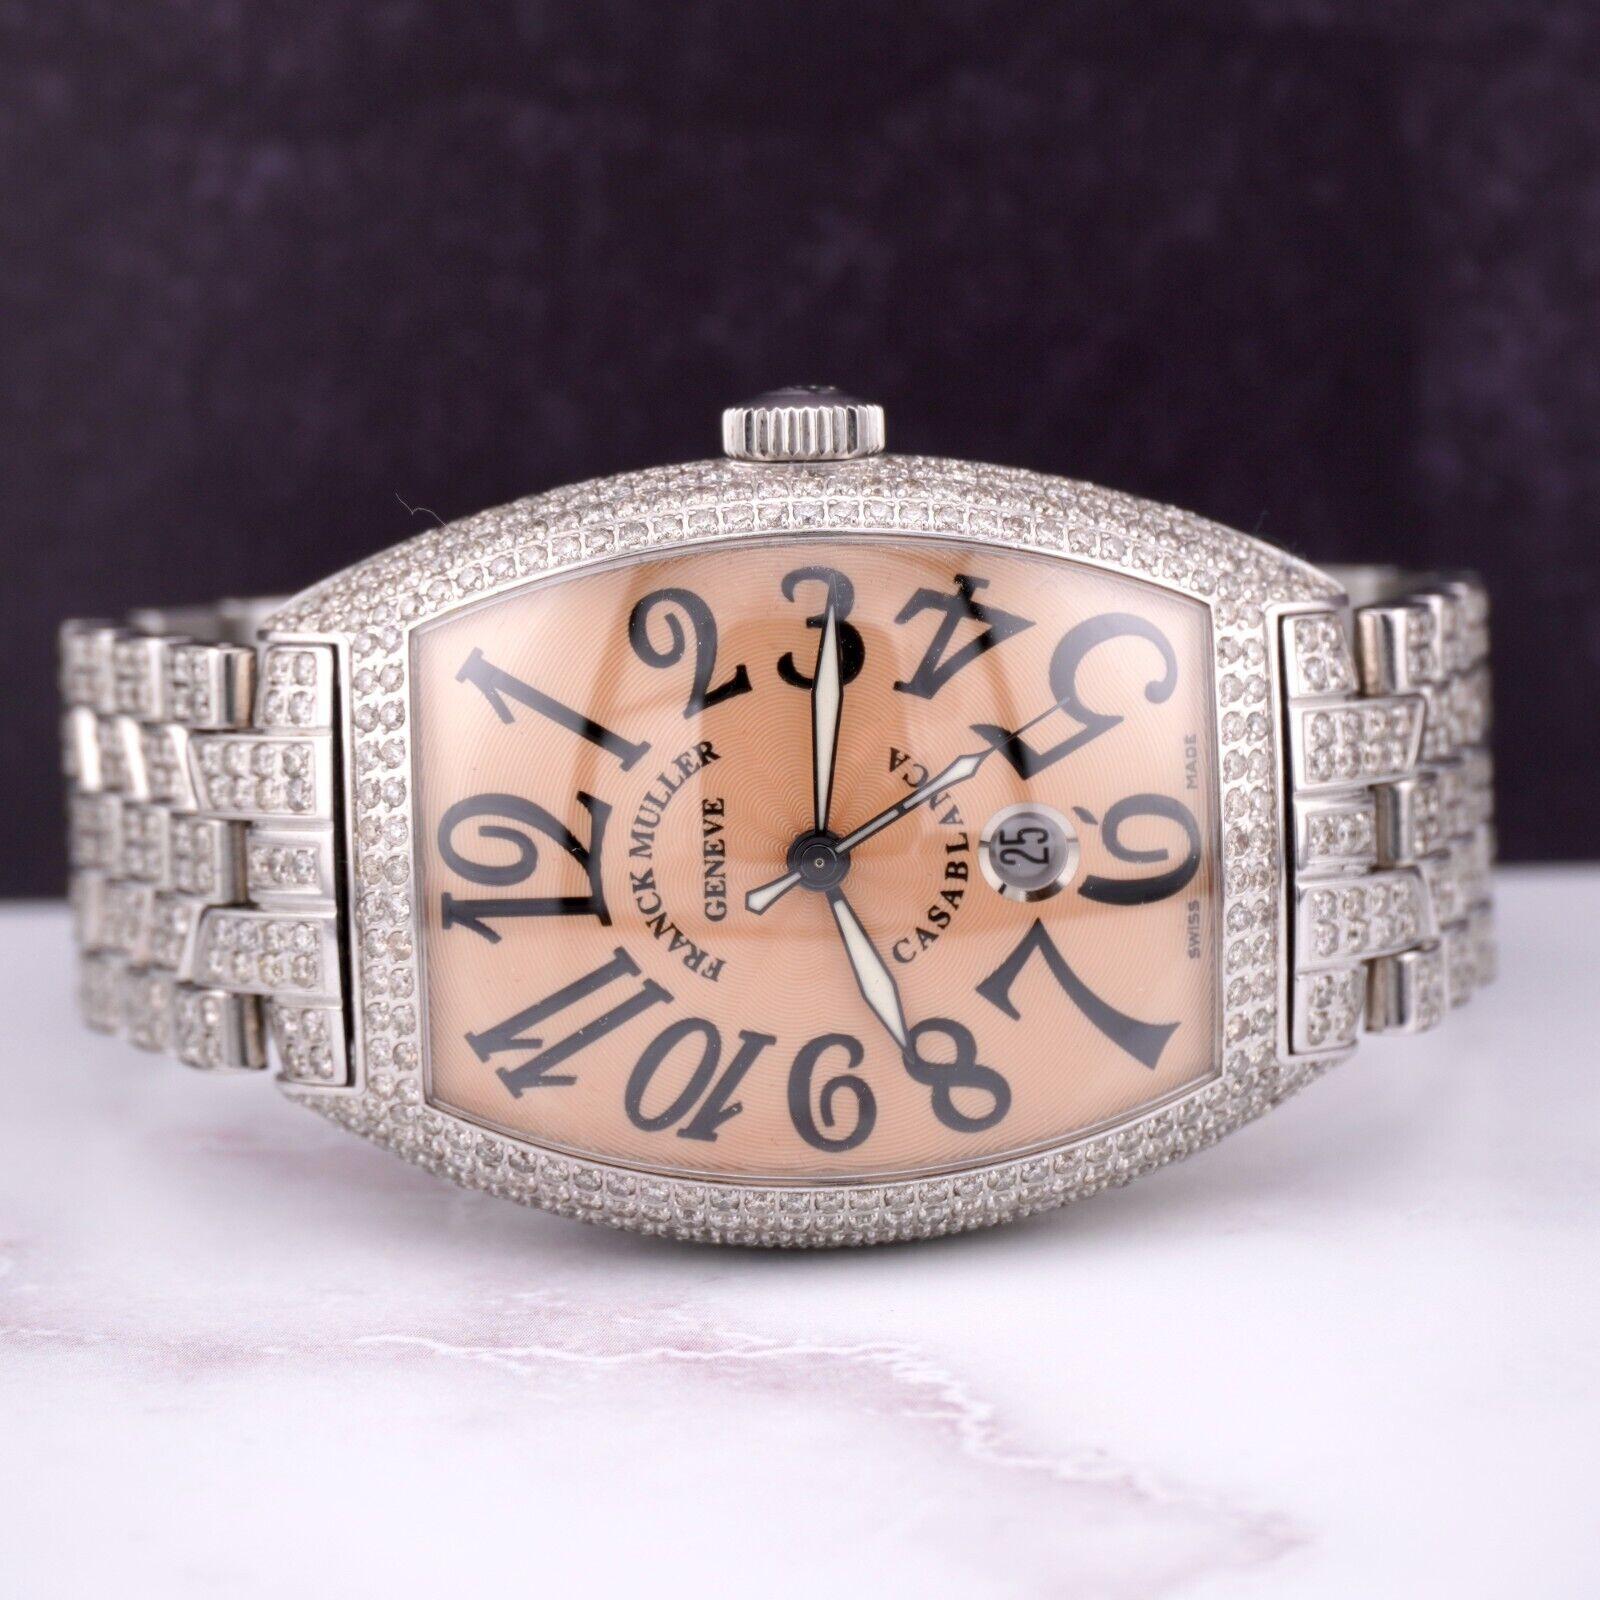 Montre Franck Muller Casablanca Jumbo 39mm. Une montre d'occasion avec boîte cadeau. La montre elle-même est authentique et est accompagnée d'une carte d'authenticité. La référence de la montre est 8880 et elle est en excellent état (voir photos).